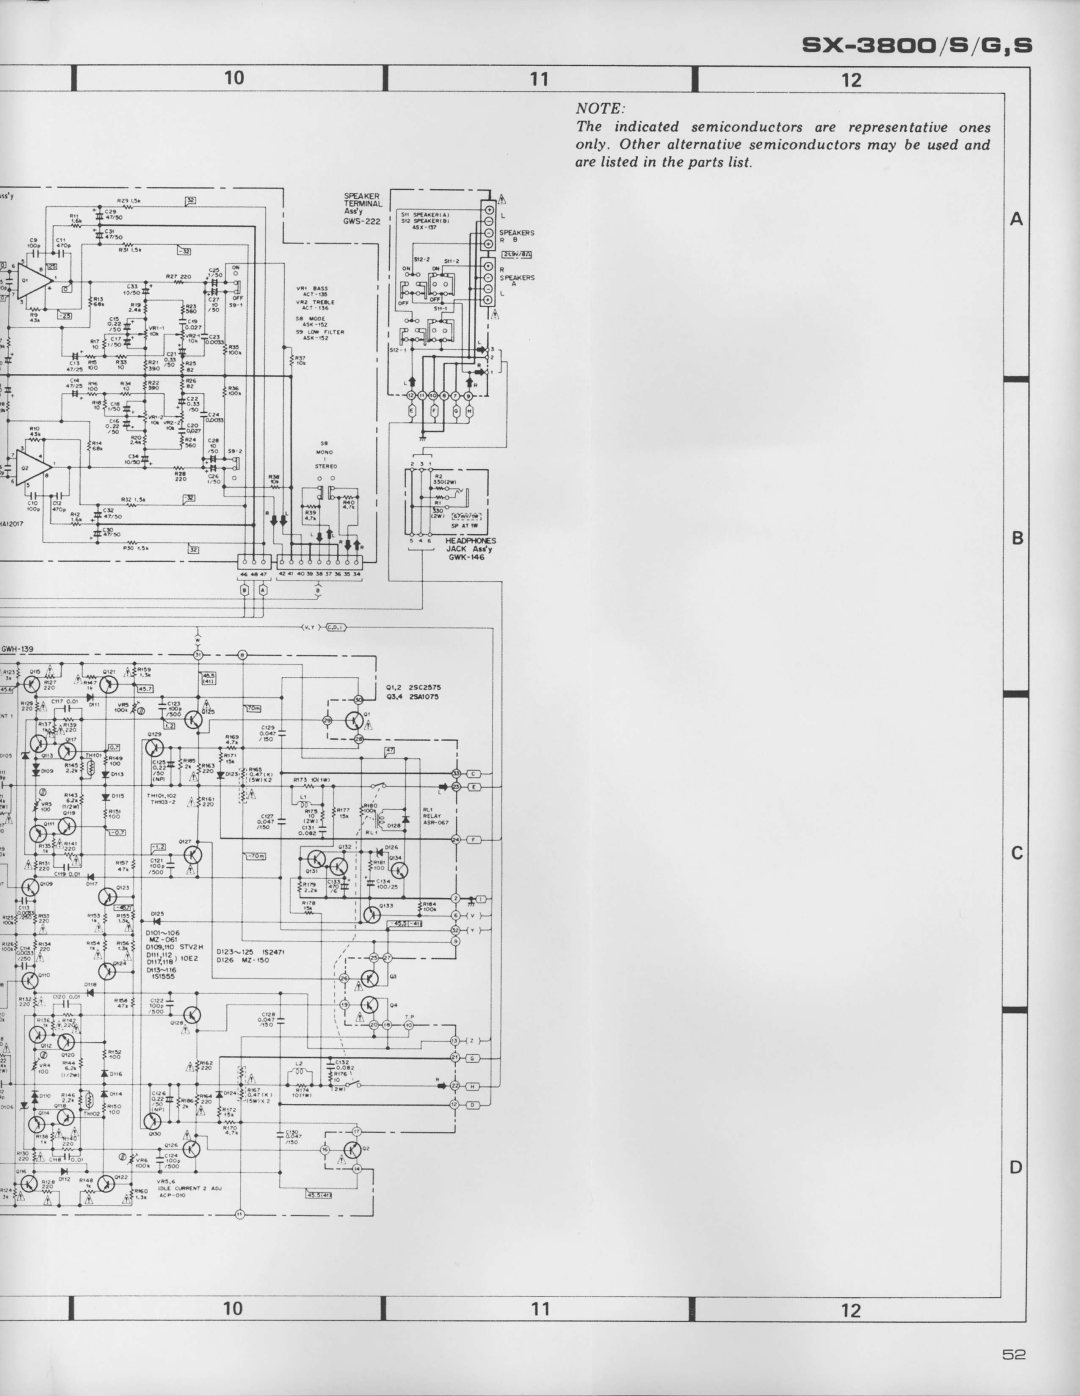 Pioneer SX-3800 manual rtml, It-tt*,d*,i, sX-3EtCO/si/GirS, UJl--J, 11ffifl, l-i--.-*ar 